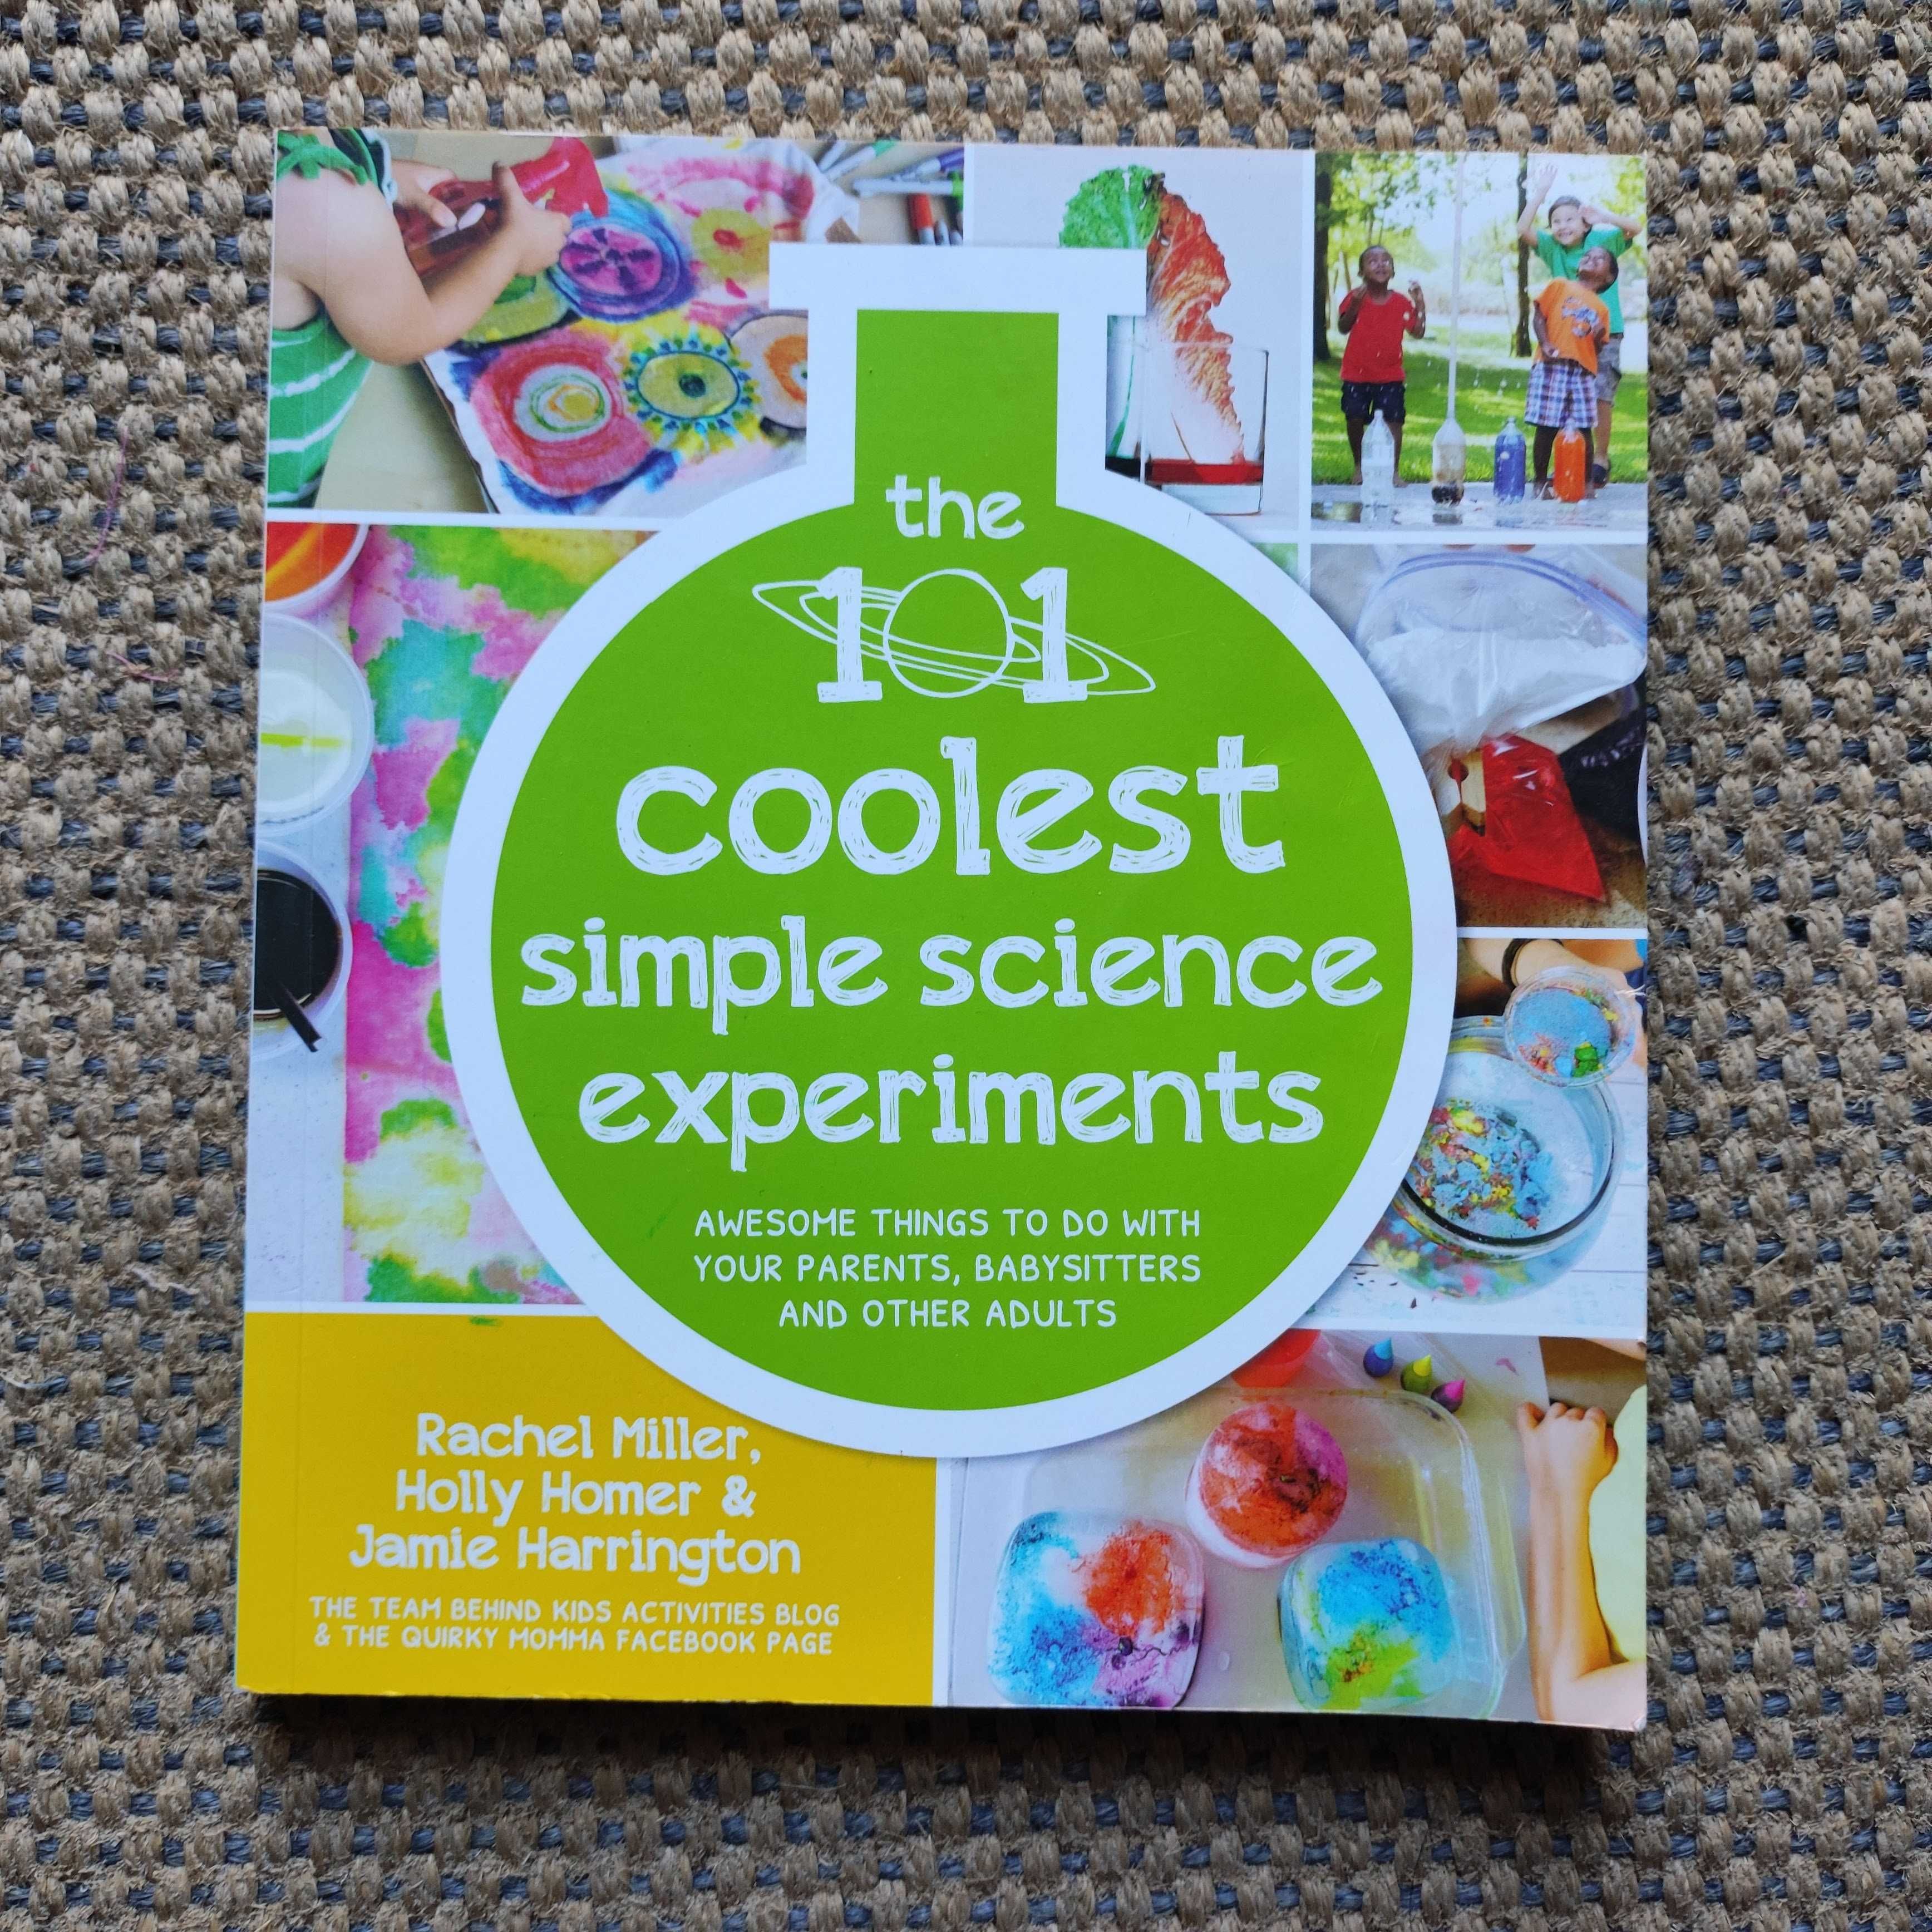 Livro "101 Coolest Simple Science Experiments" (portes incluídos)